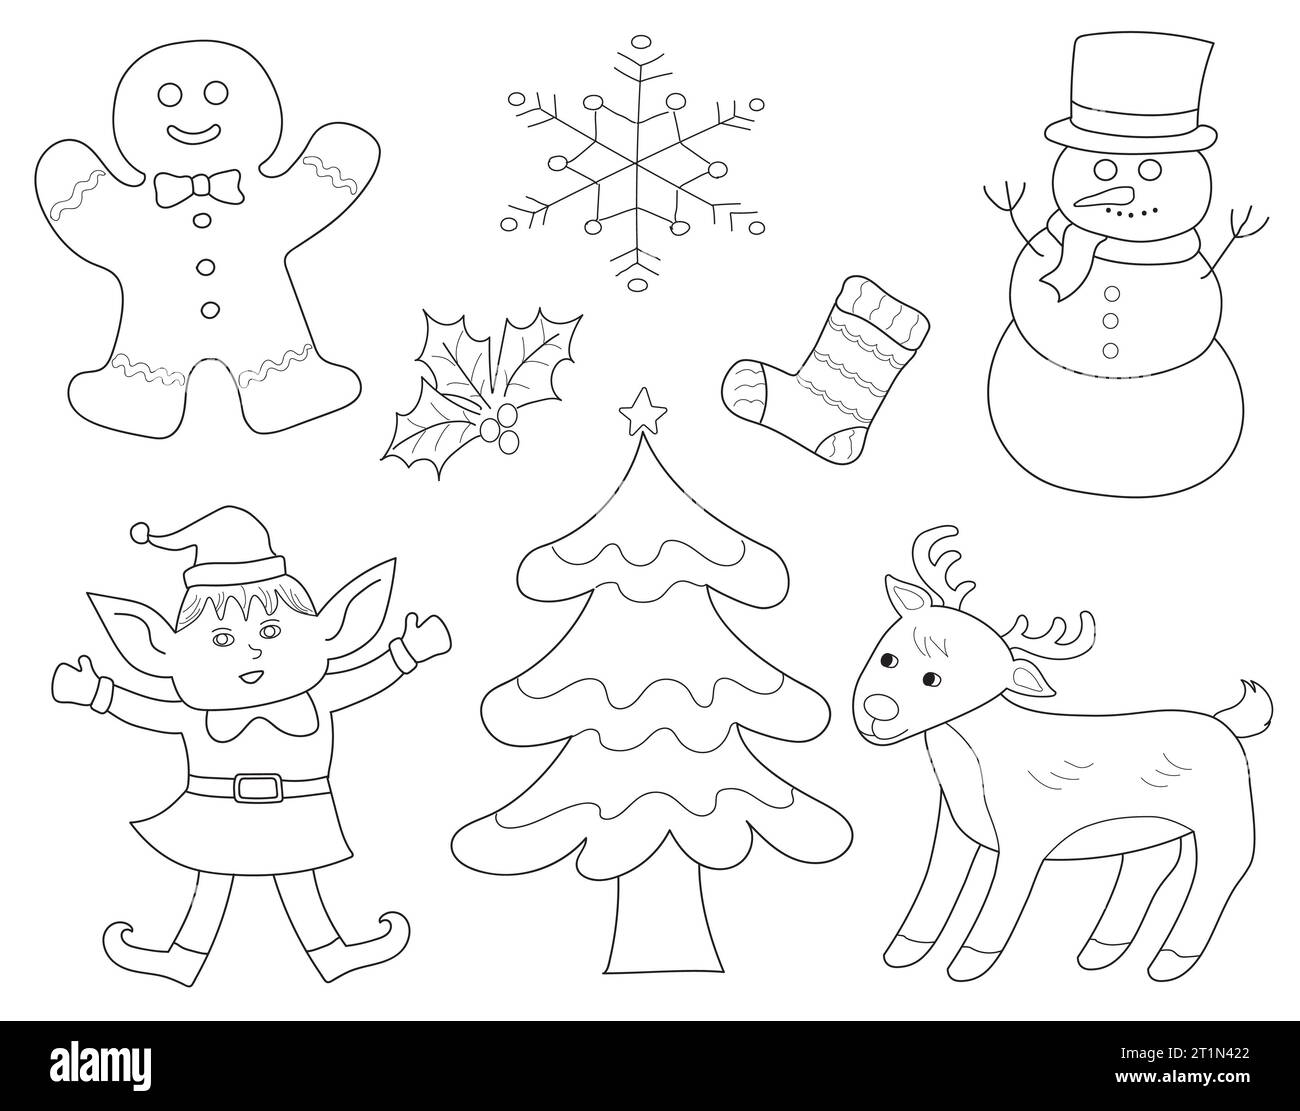 Eine Reihe von schwarz-weißen Zeichentrickzeichnungen mit Weihnachtsfiguren und -Symbolen. Weihnachtsbaum, Schneeflockenform, Rentier, Elf, Schneemann, Lebkuchen, Ho Stockfoto